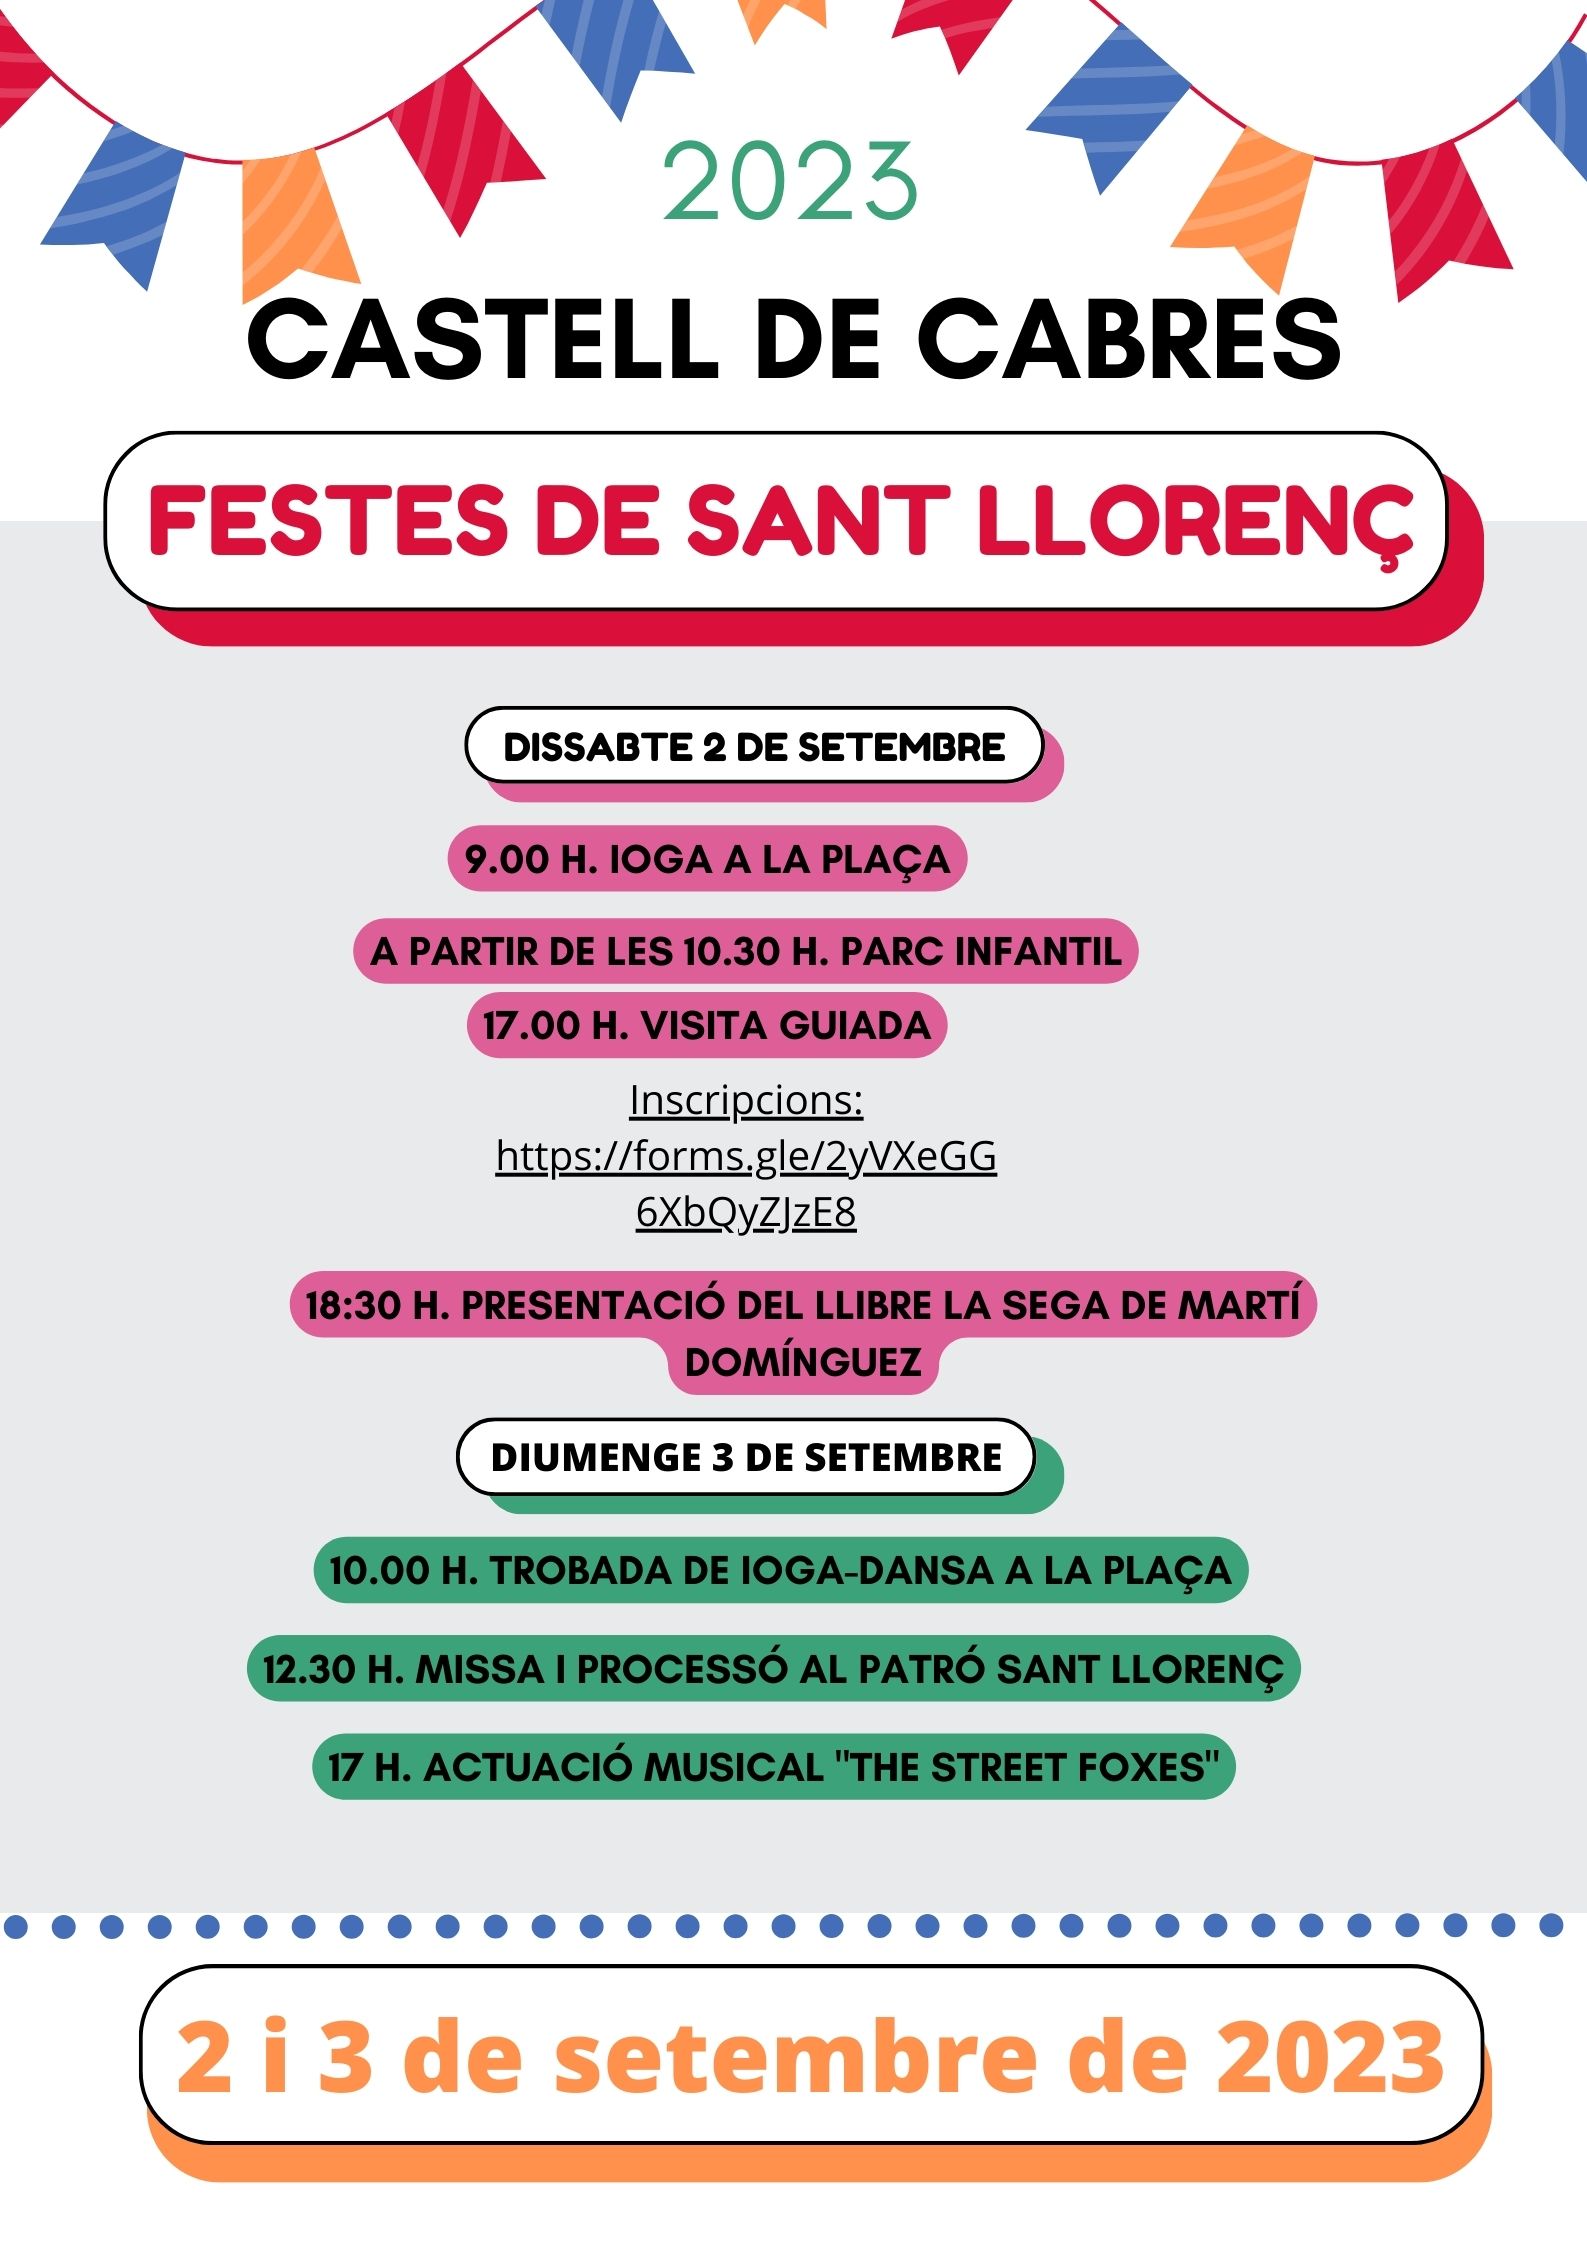 Fiestas de Sant Llorenç, 2 y 3 de septiembre